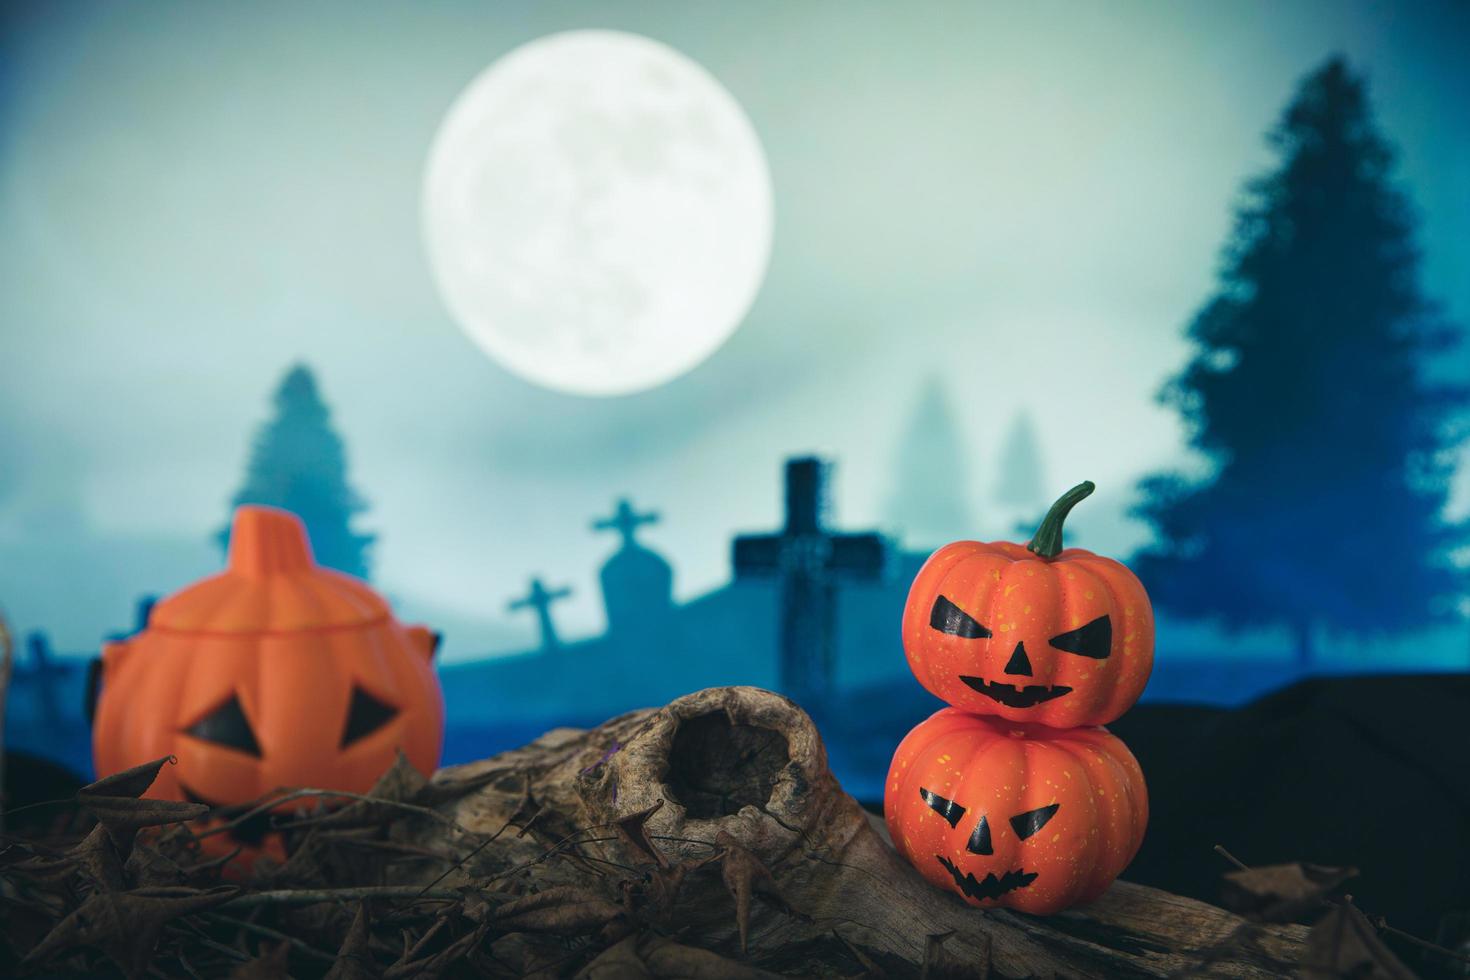 cimitero spettrale con zucca di halloween bagliore foto